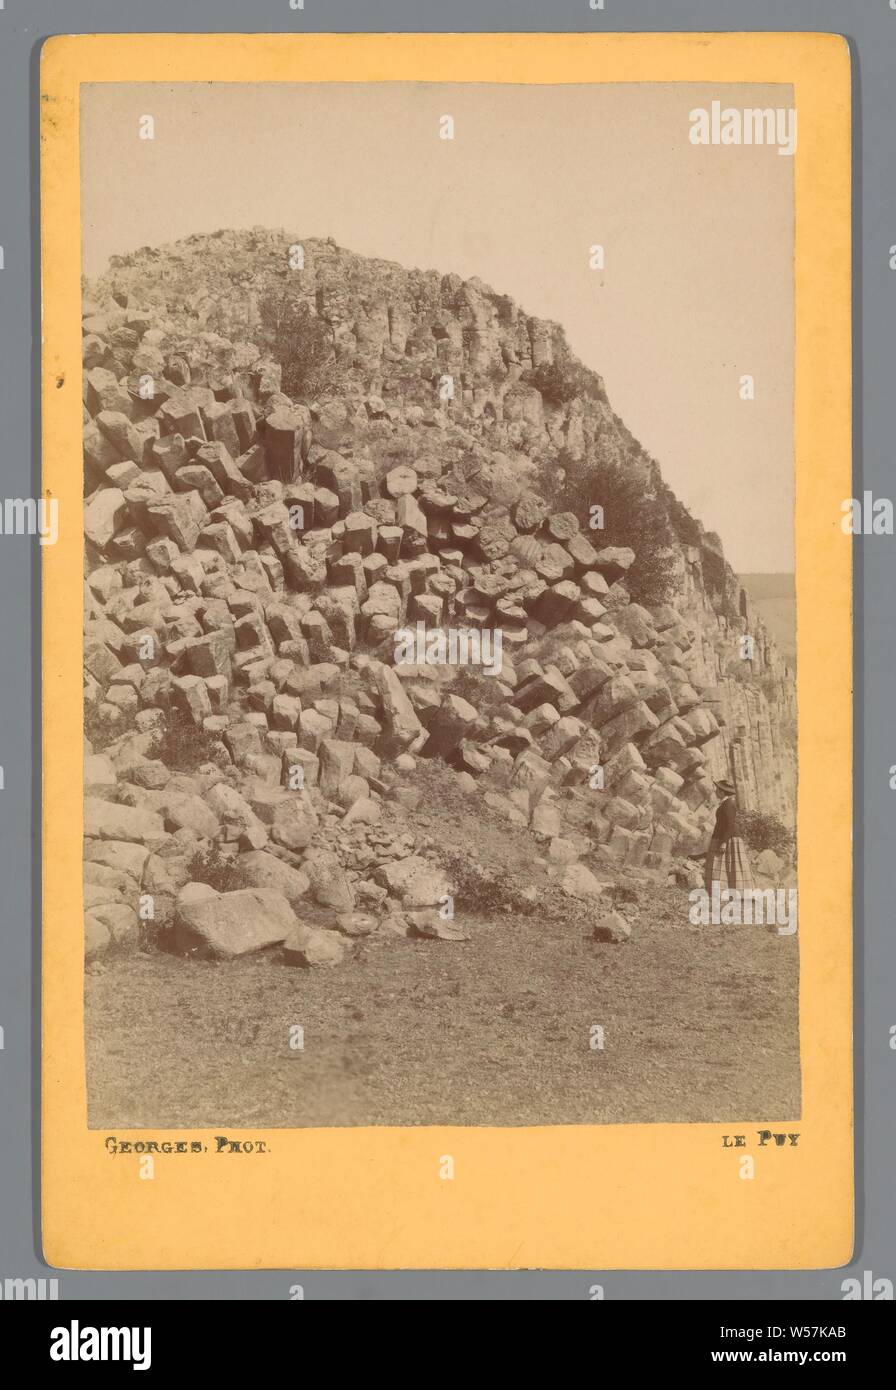 Rock formation at Le Puy-en-Velay Le Puy (title on object), rock formations, Le Puy -en-Velay, A. Georges (mentioned on object), Le Puy-en-Velay, 1870 - 1900, cardboard, photographic paper, albumen print, h 168 mm × w 108 mm Stock Photo